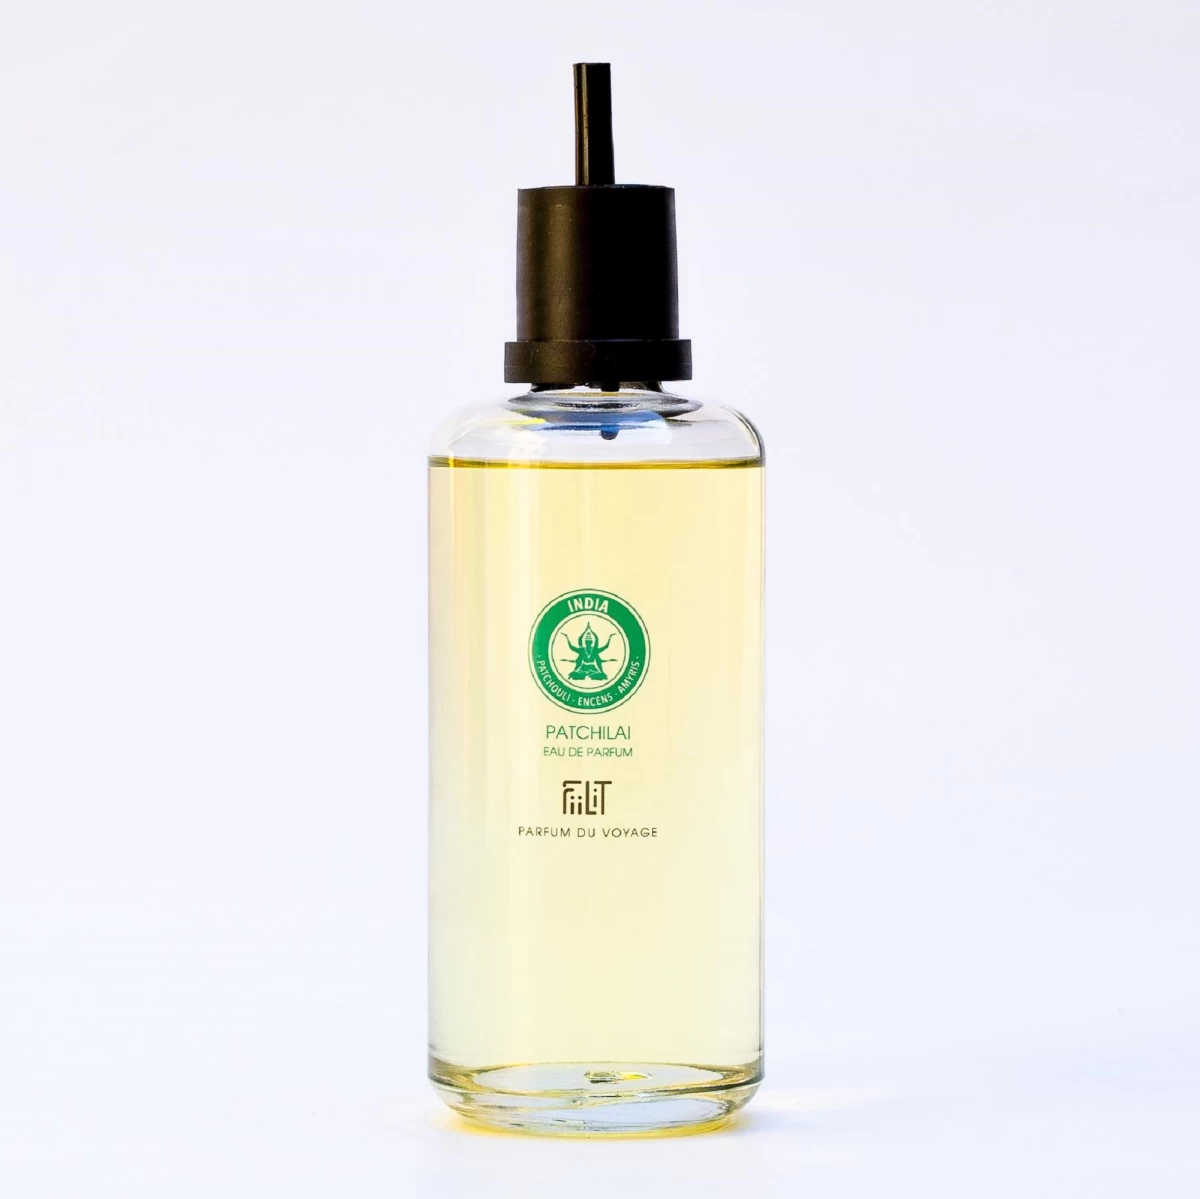 detailed_14_eau-de-parfum-patchilai-india-200ml-refill-fiilit-parfum-du-voyage-2.webp